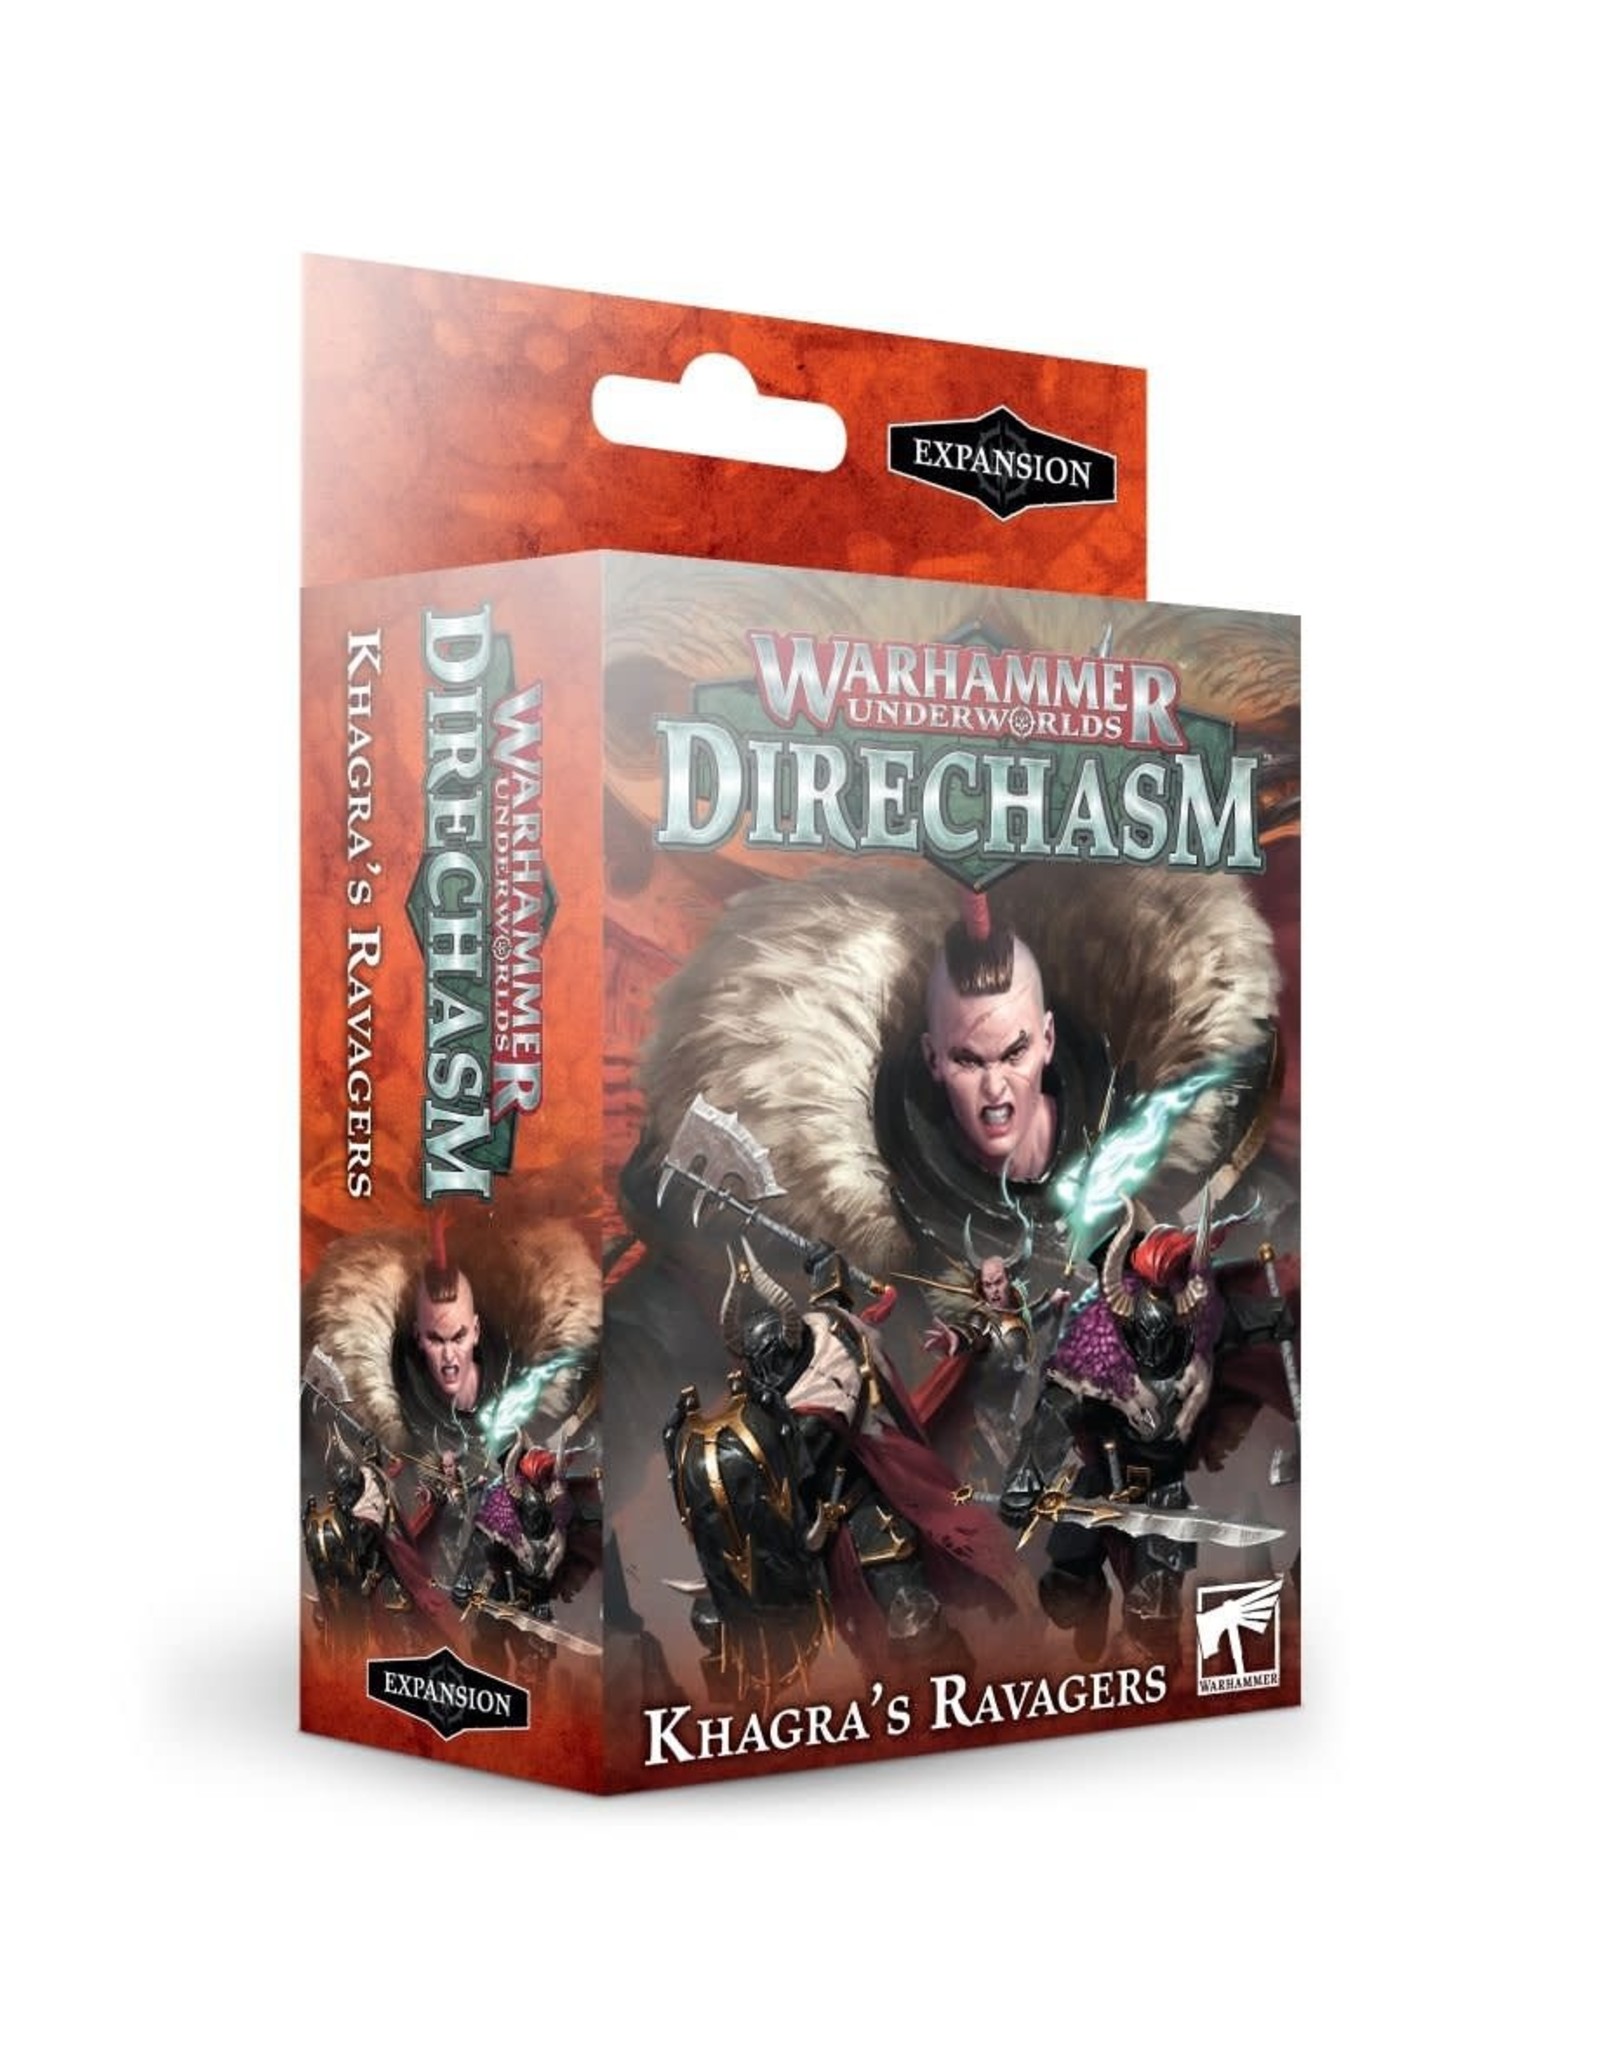 Games workshop Warhammer underworlds Direchasm: Khagra's Ravagers